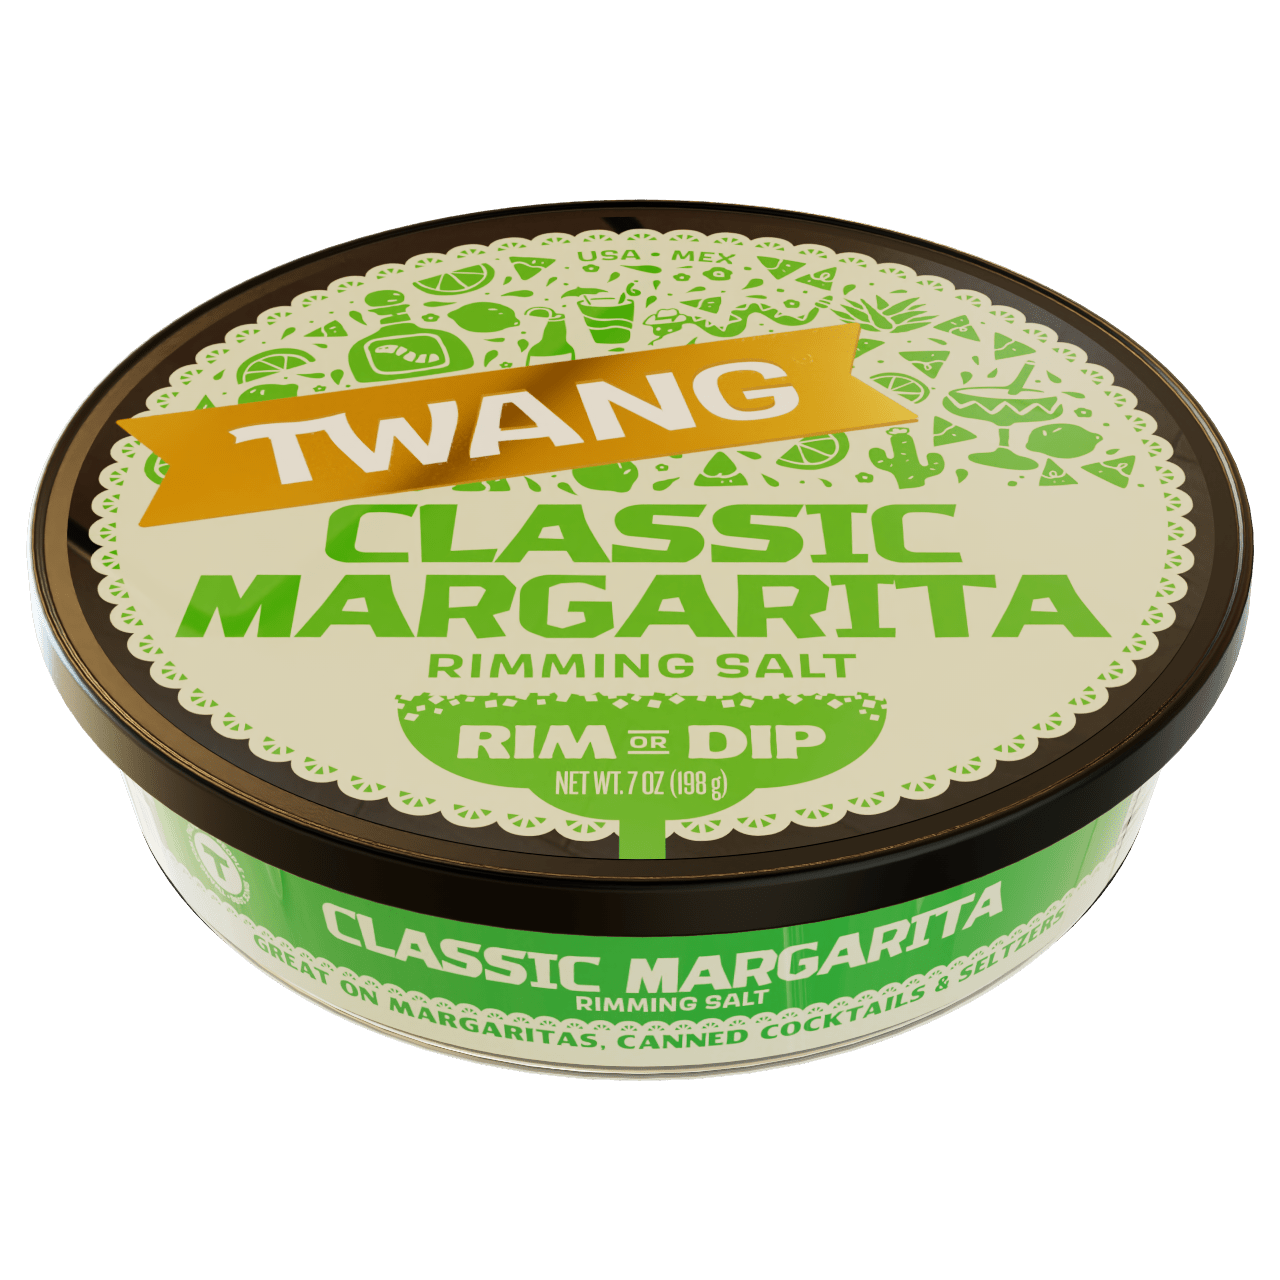 Classic Margarita Rimming Salt Twang 023604304008